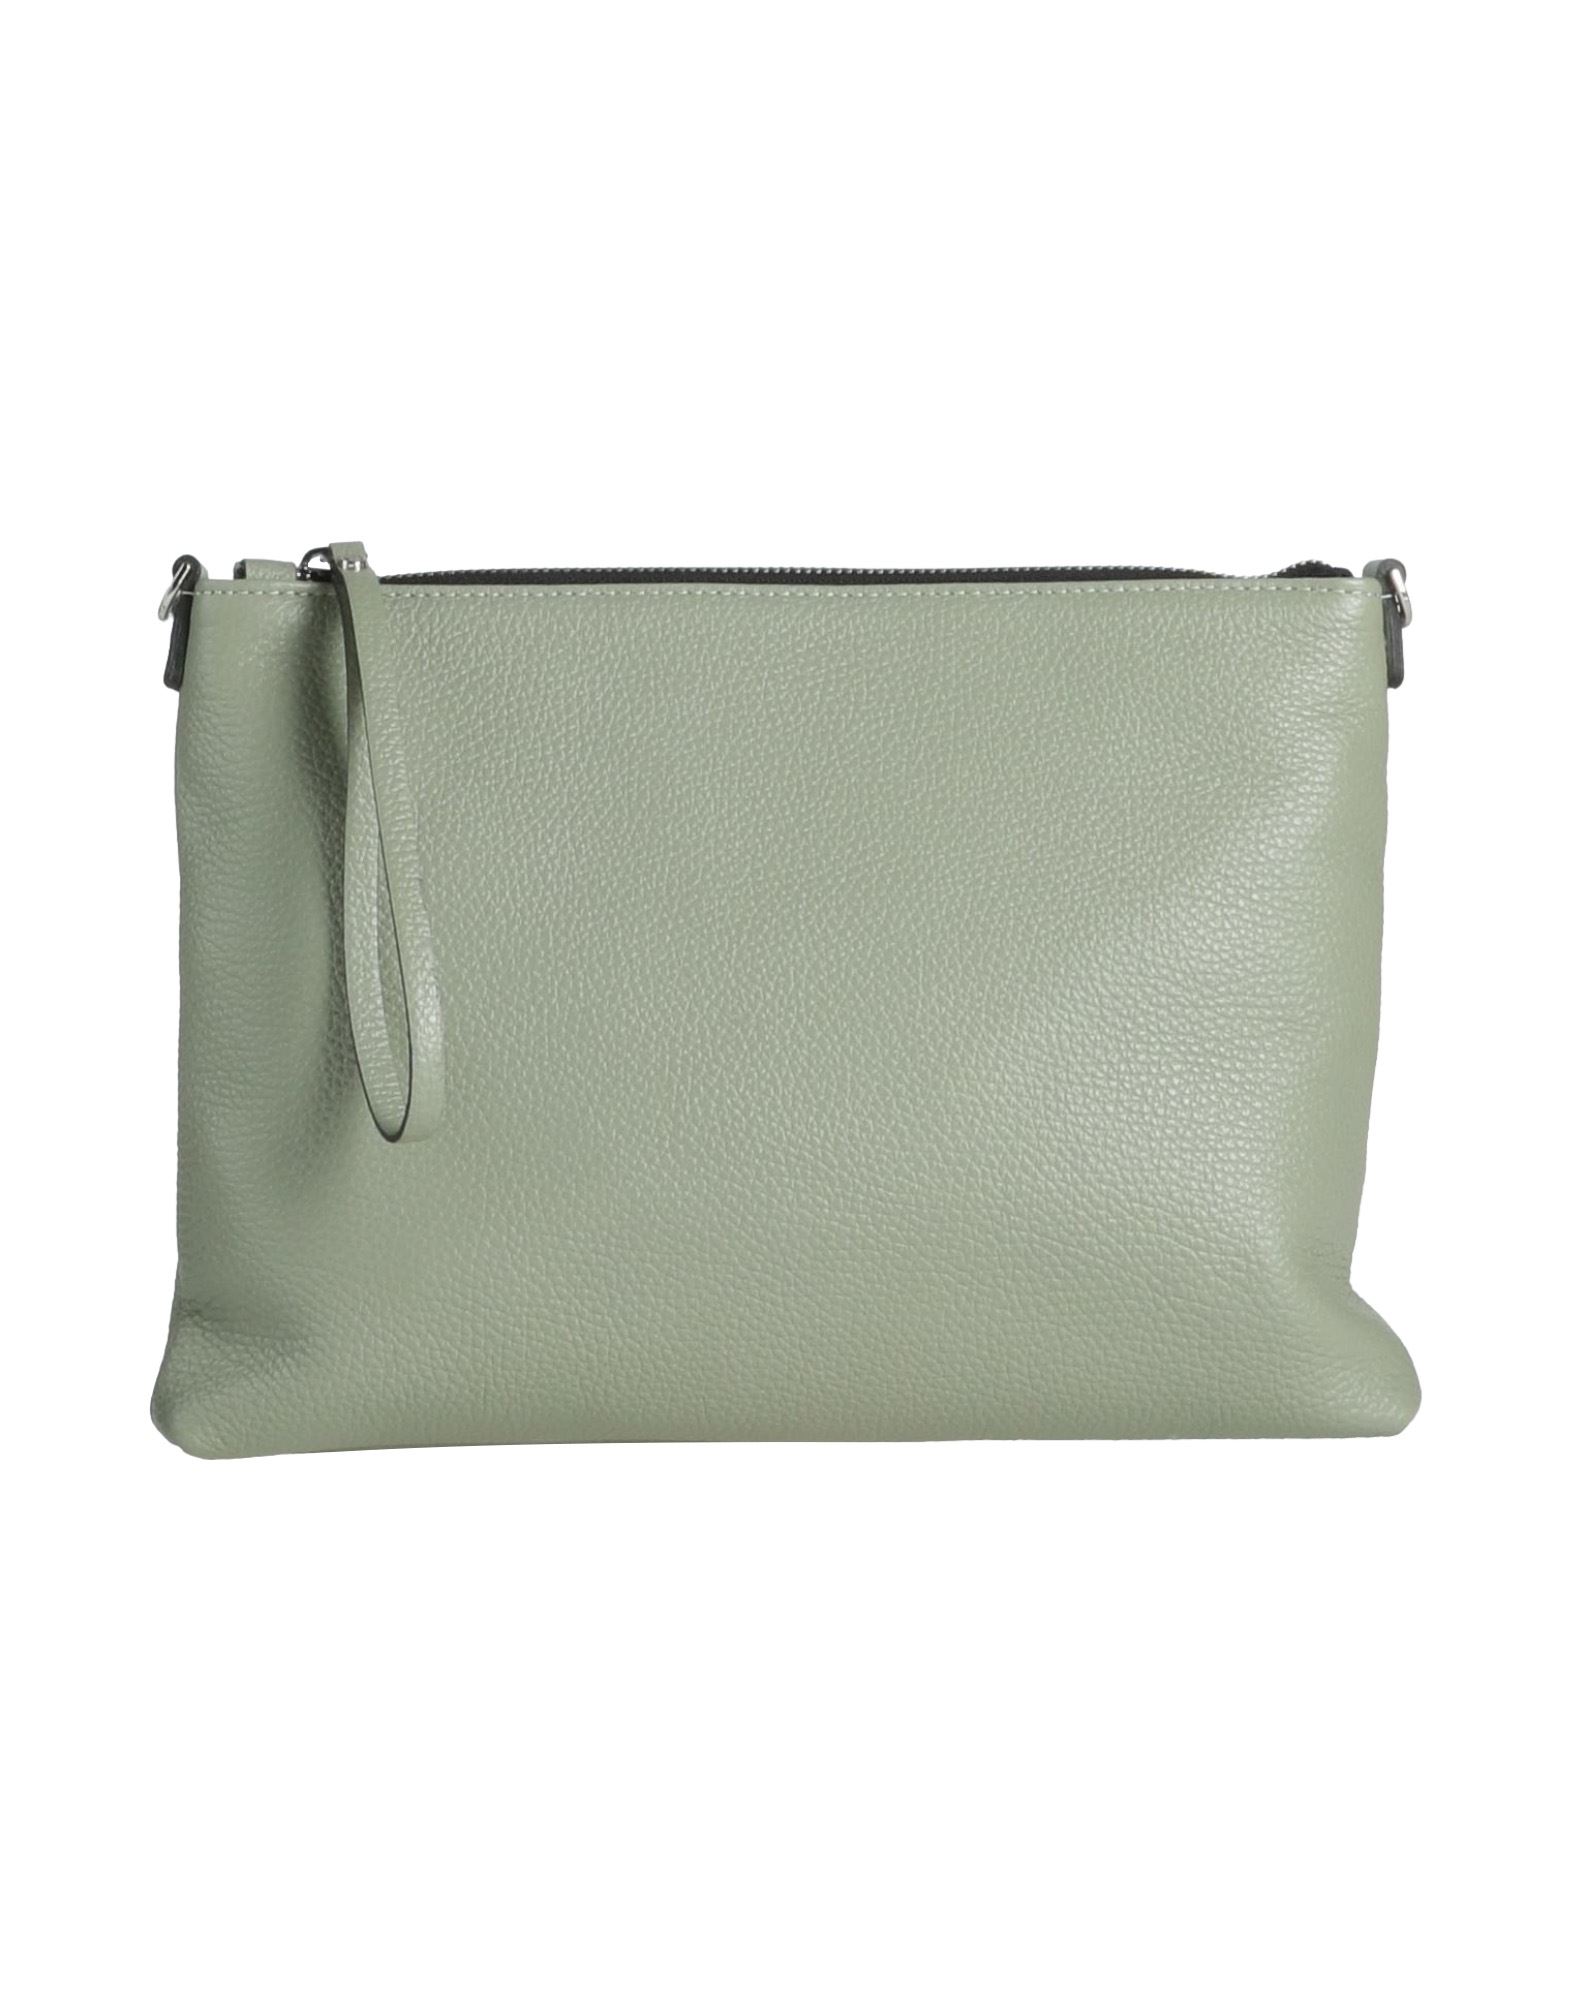 Gianni Chiarini Handbags In Sage Green